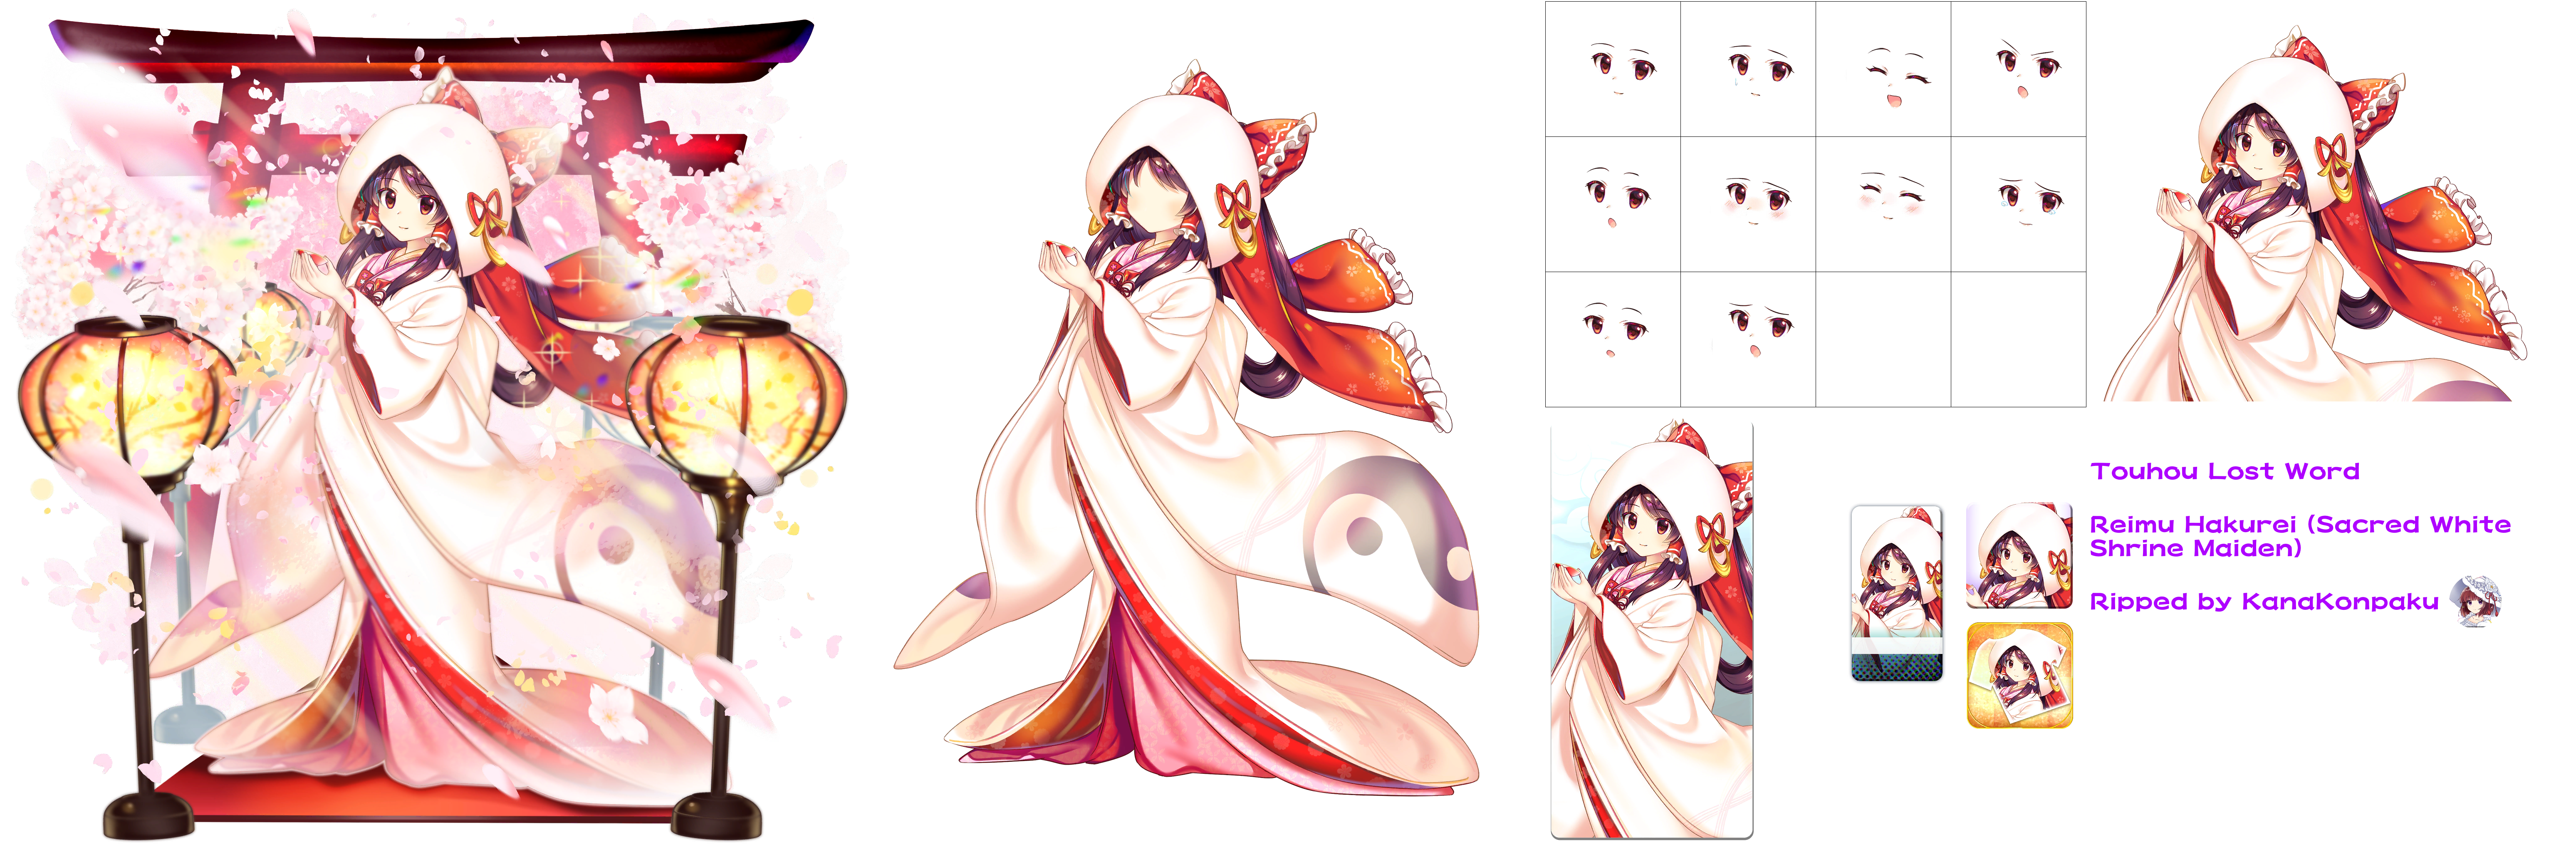 Reimu Hakurei (Sacred White Shrine Maiden)